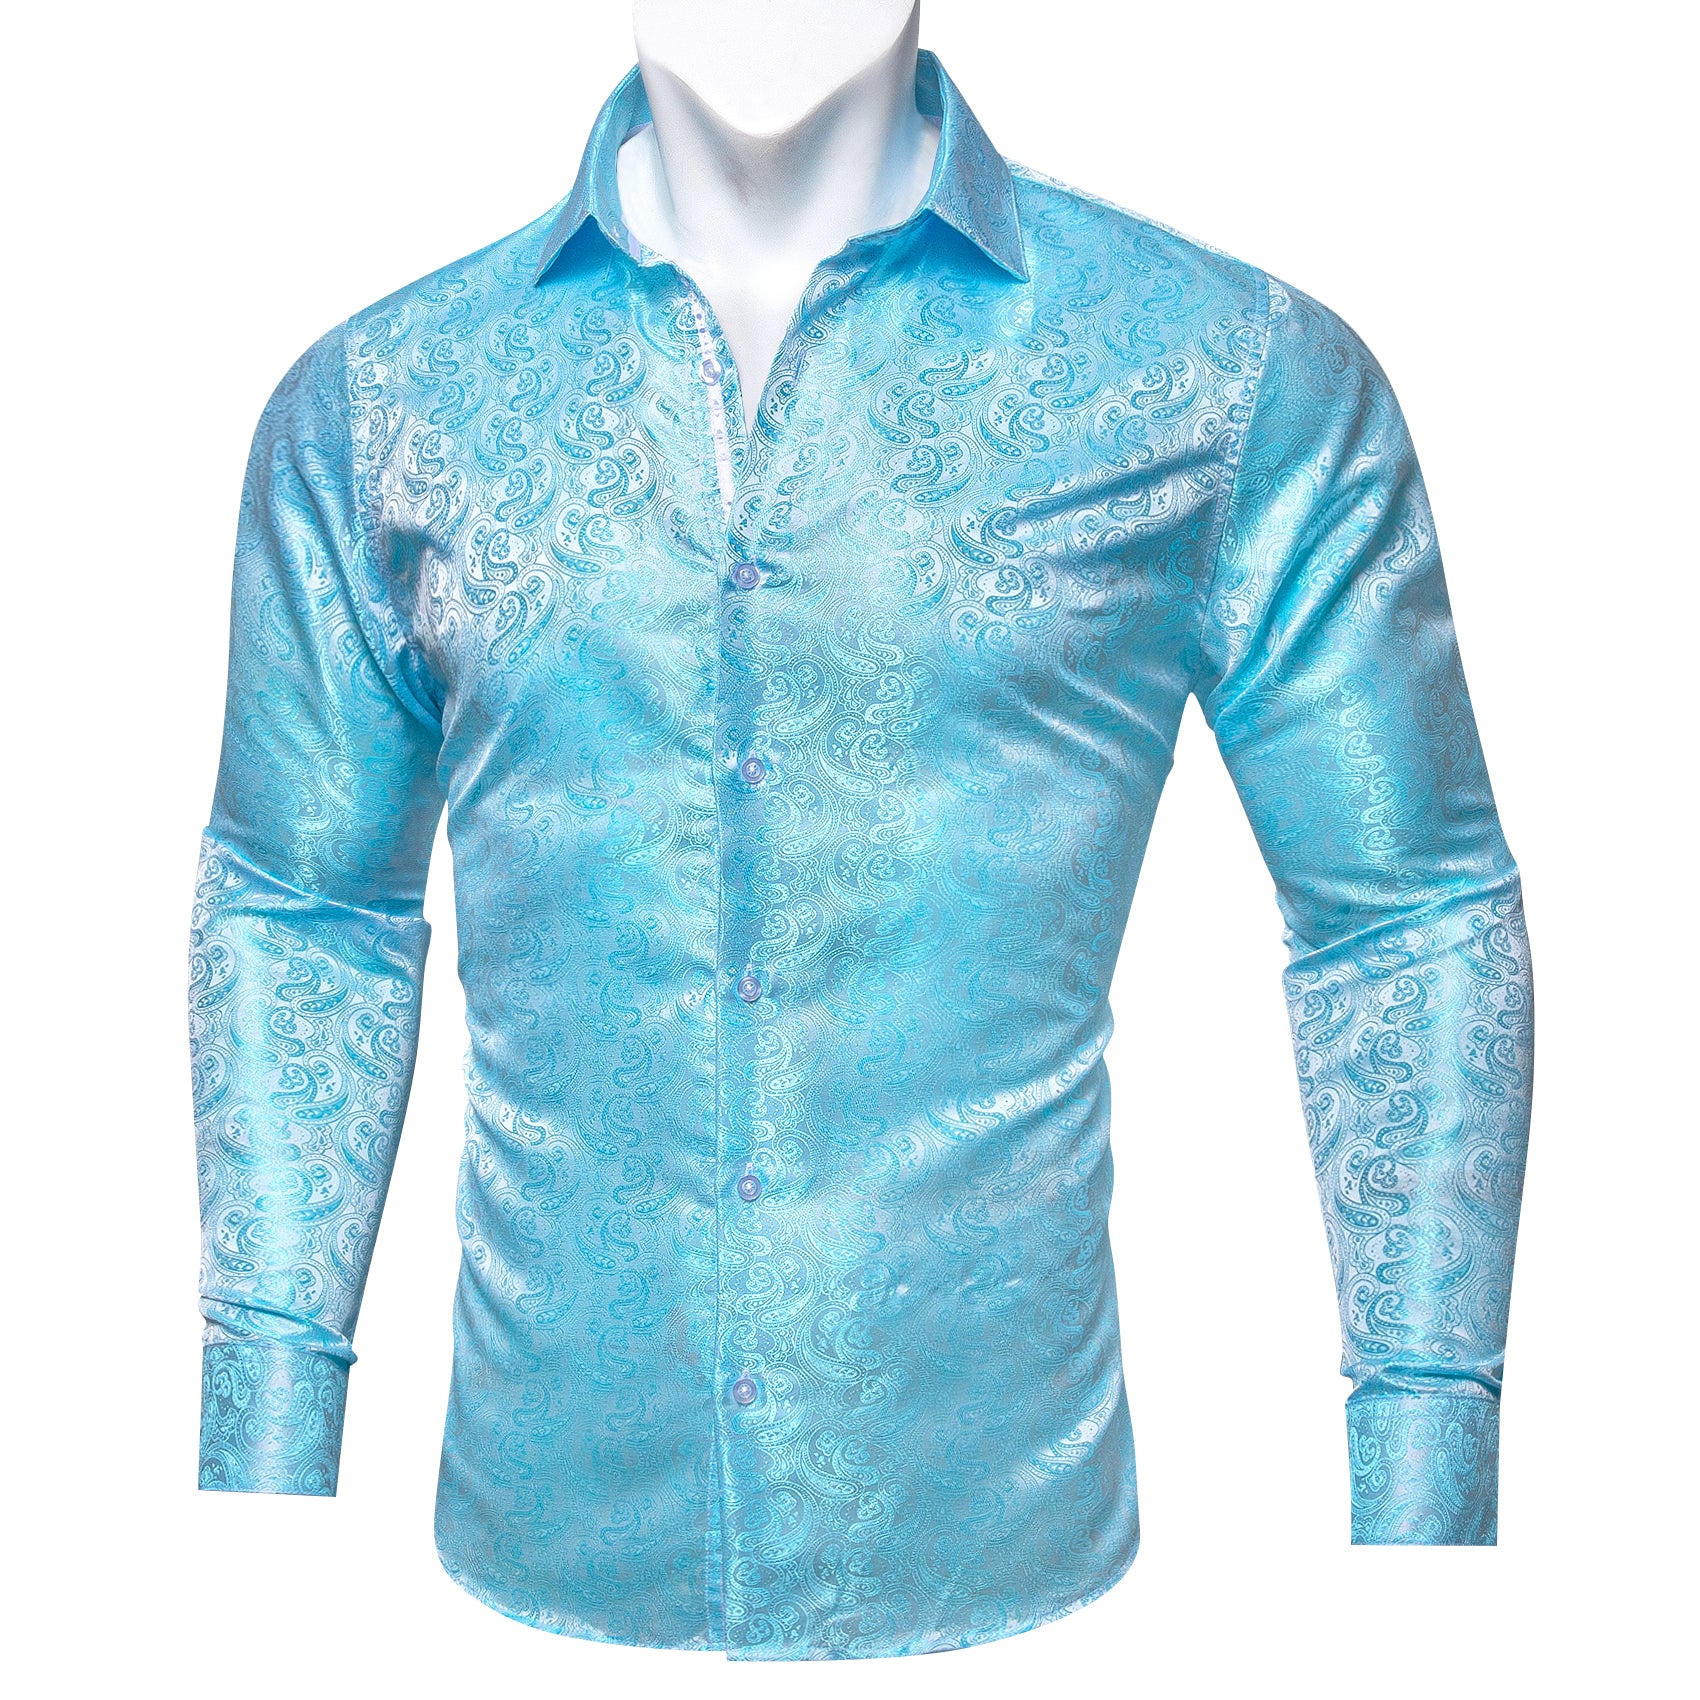 Barry.wang Button Down Shirt Teal Blue Paisley Silk Men's Long Sleeve Shirt